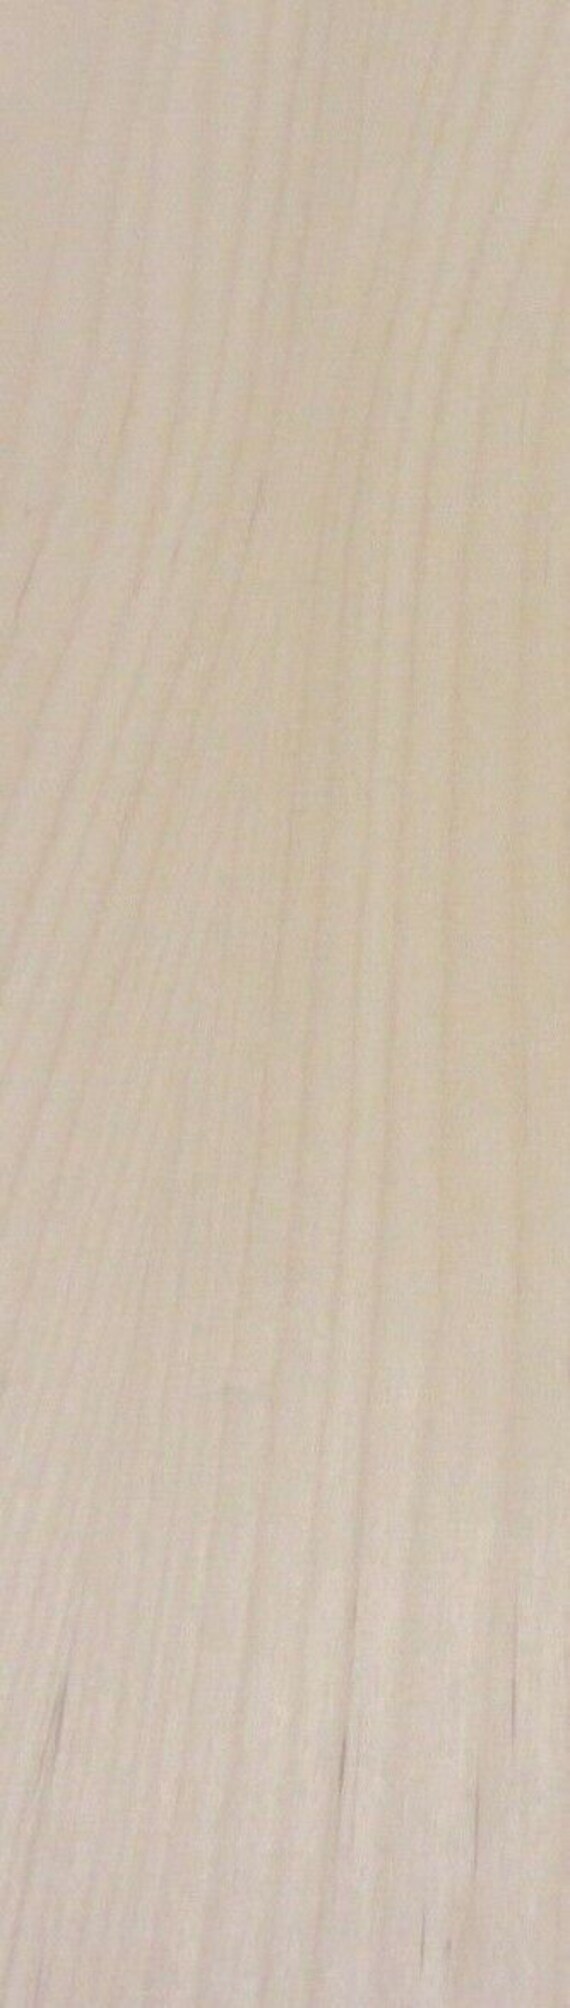 Cherry wood veneer edgebanding 2-1/4" x 120" with preglued adhesive 2.25" 